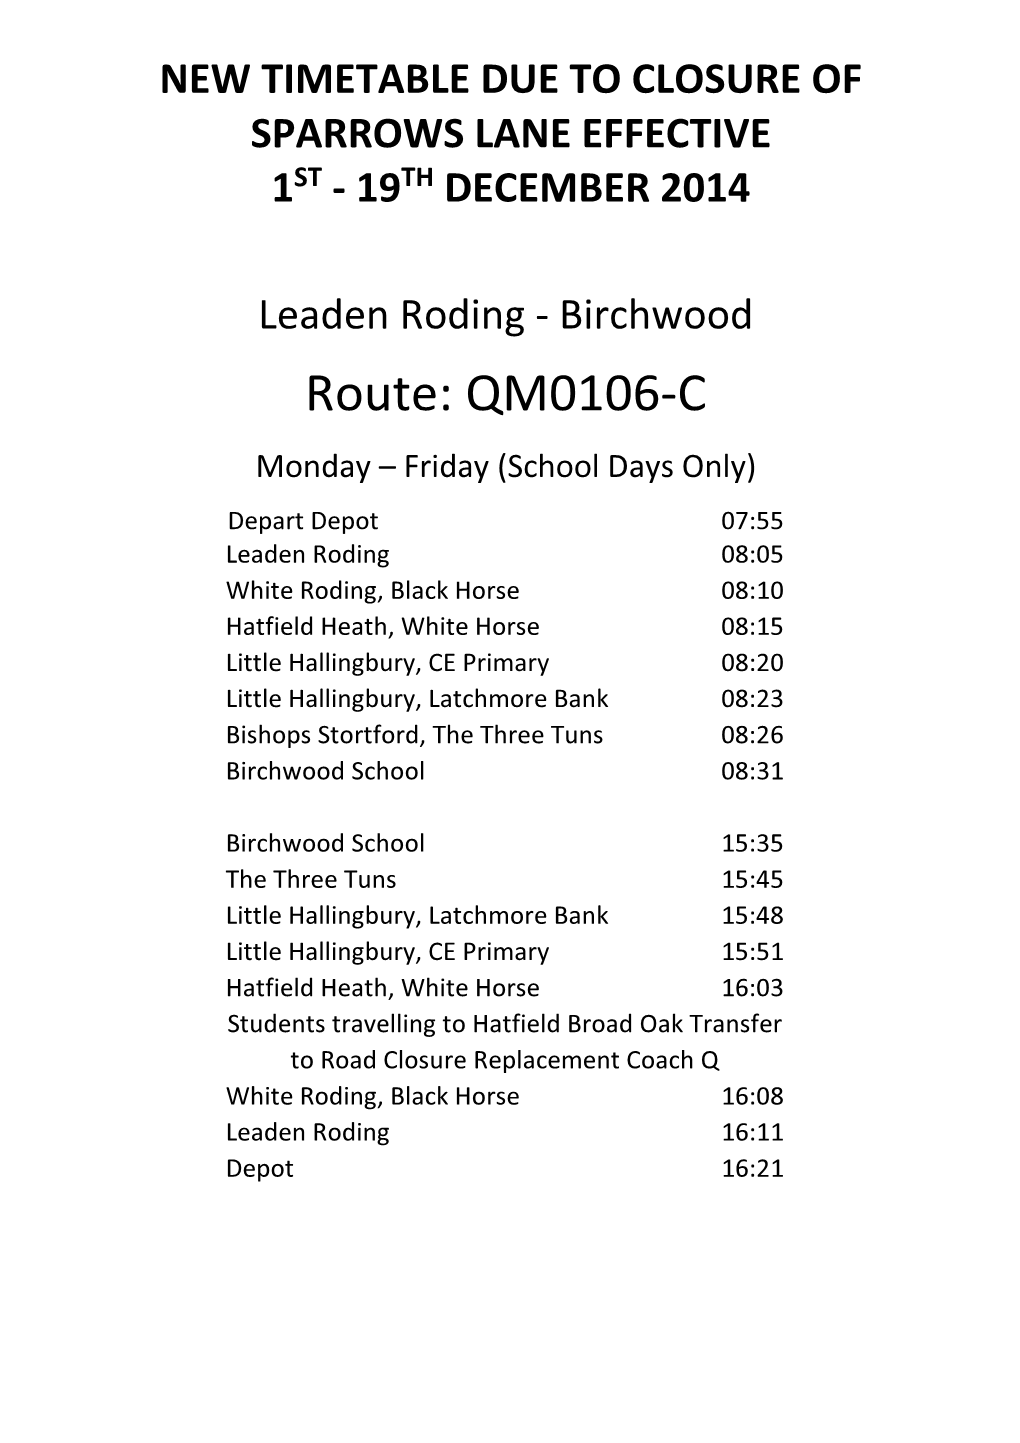 Route: QM0106-C